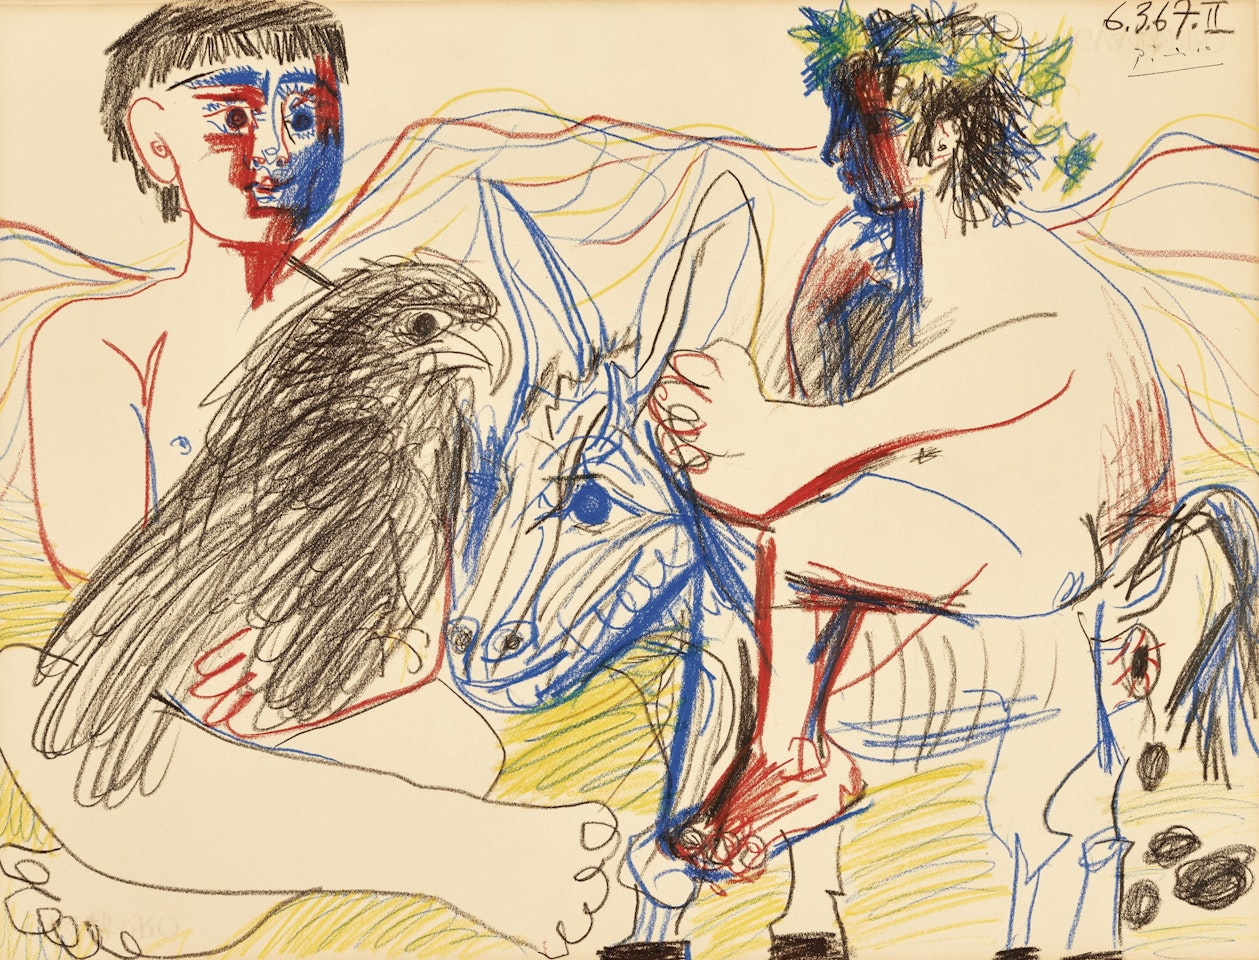 ADOLESCENTS, AIGLE ET ÂNE by Pablo Picasso